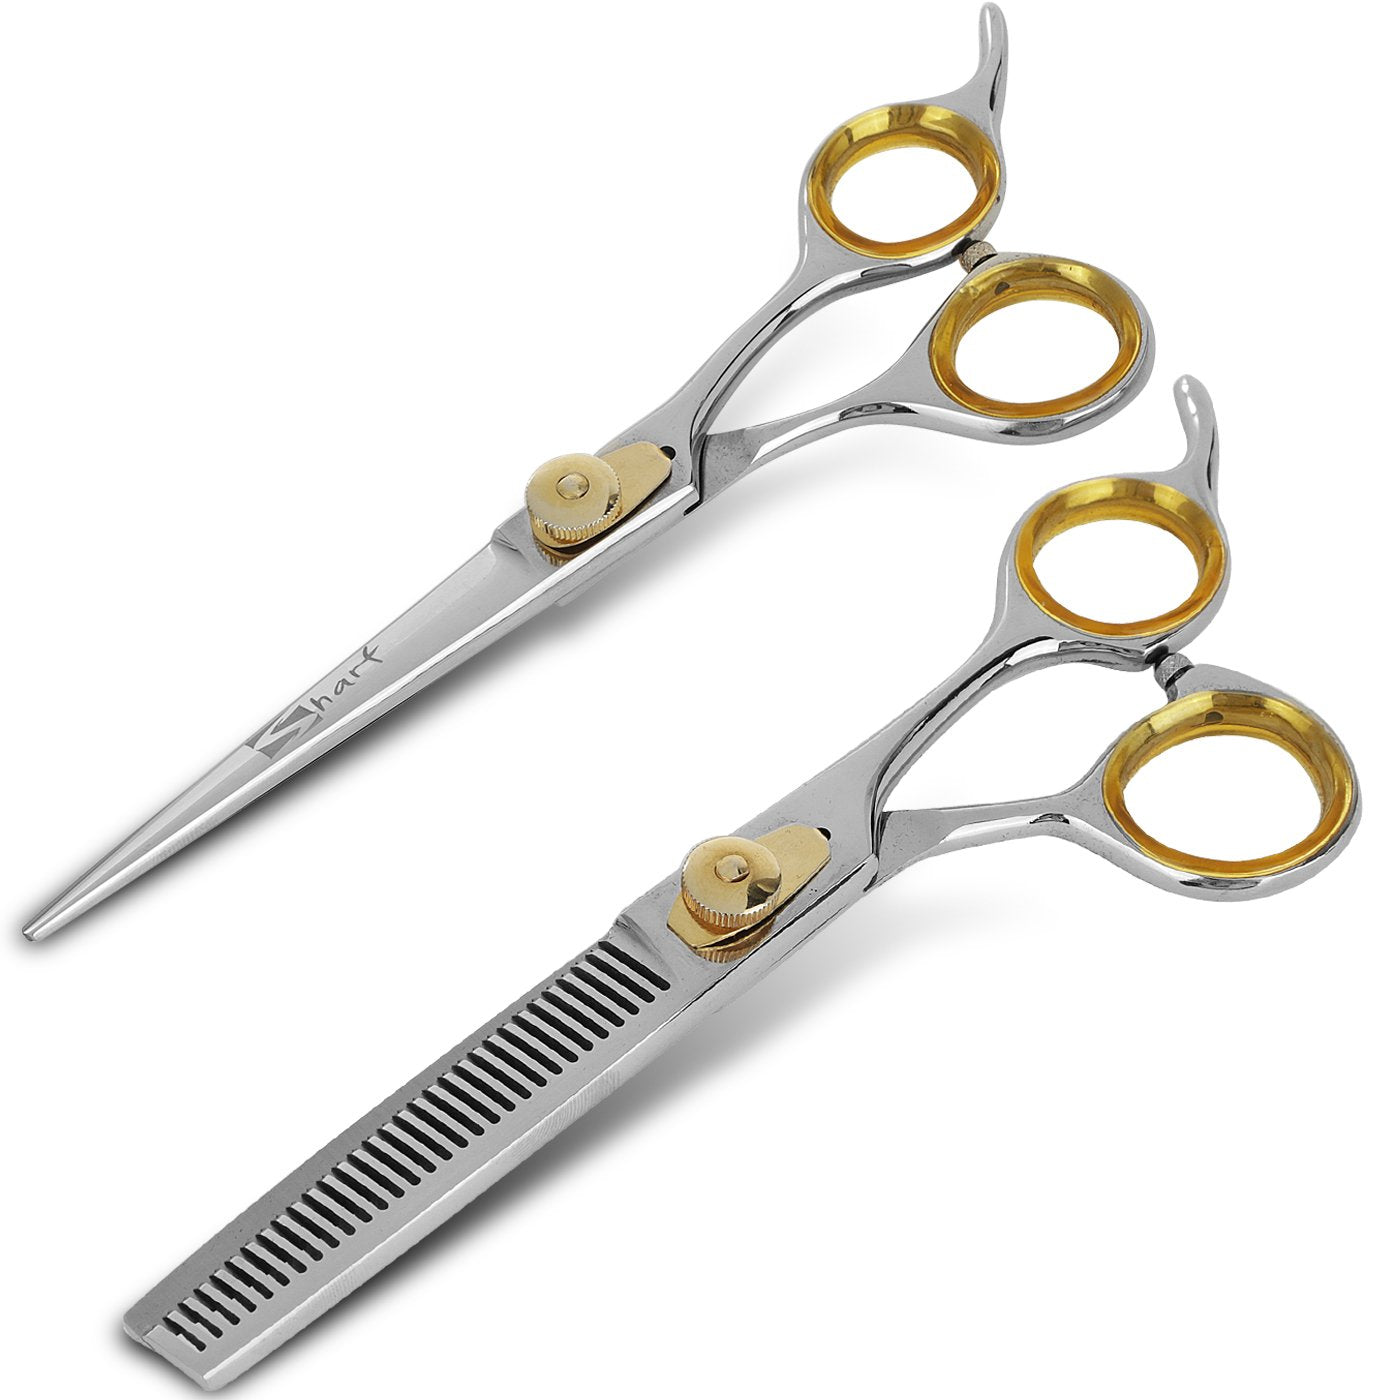 Fnlune Golden Crown Seamless Standard Tooth Scissors Professional Hair  Salon Scissors Cut Barber Haircut Thinning Shear Scissors - Hair Scissors -  AliExpress